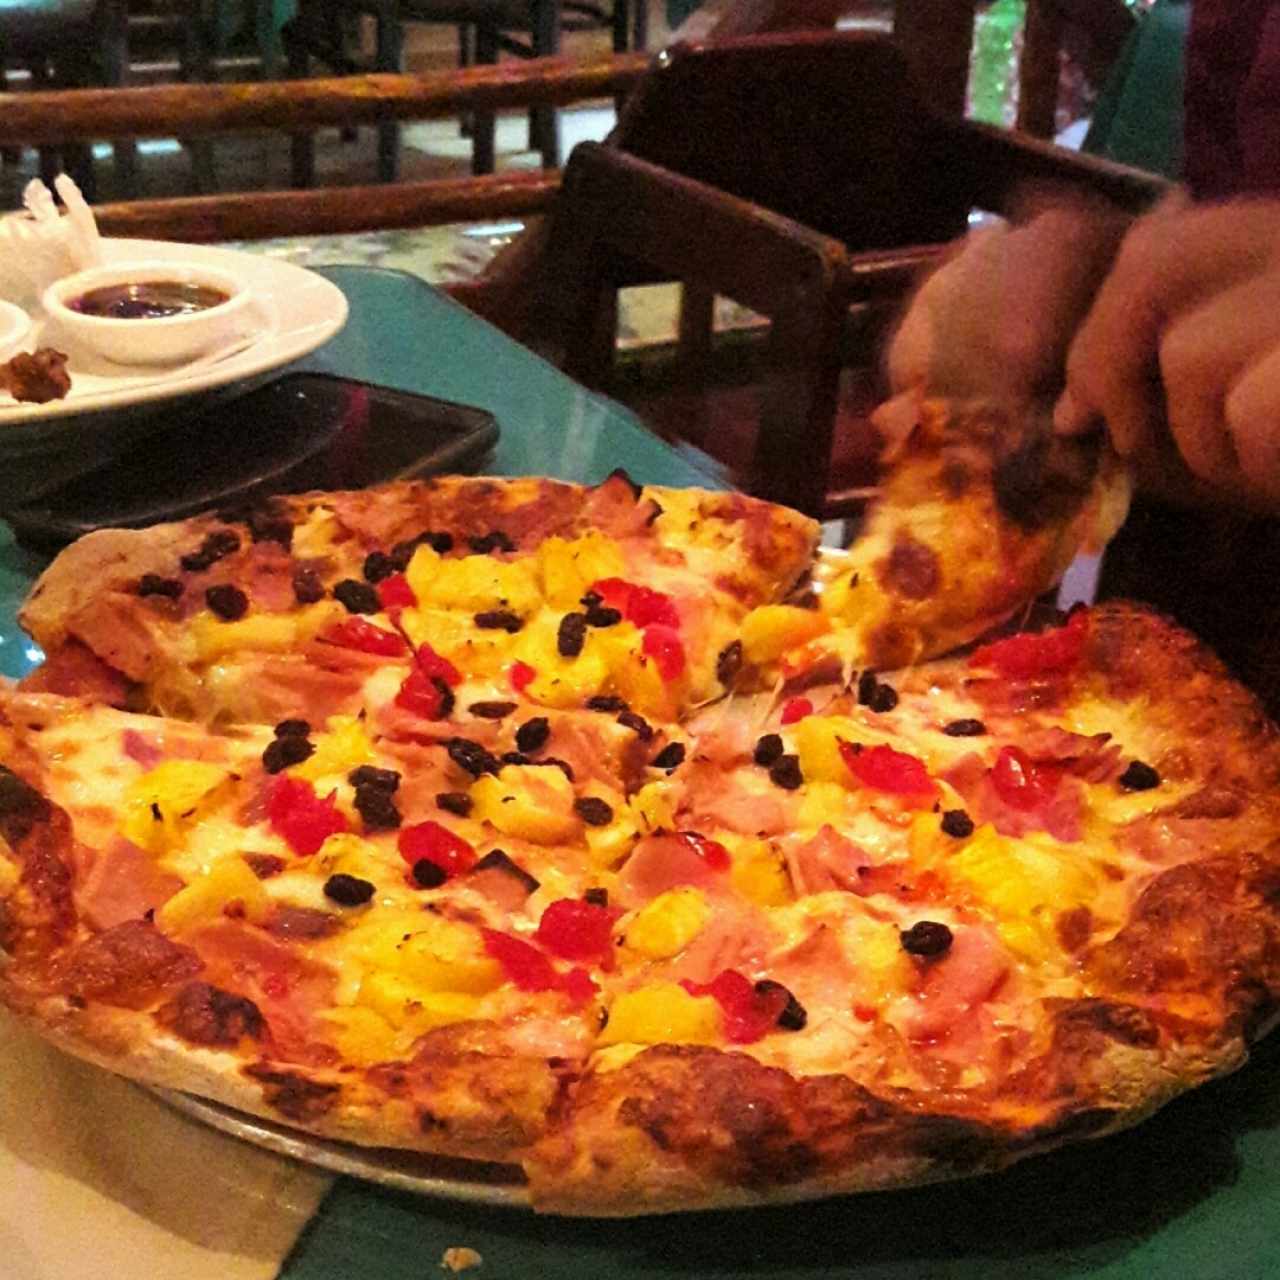 Pizza Hawaiana 